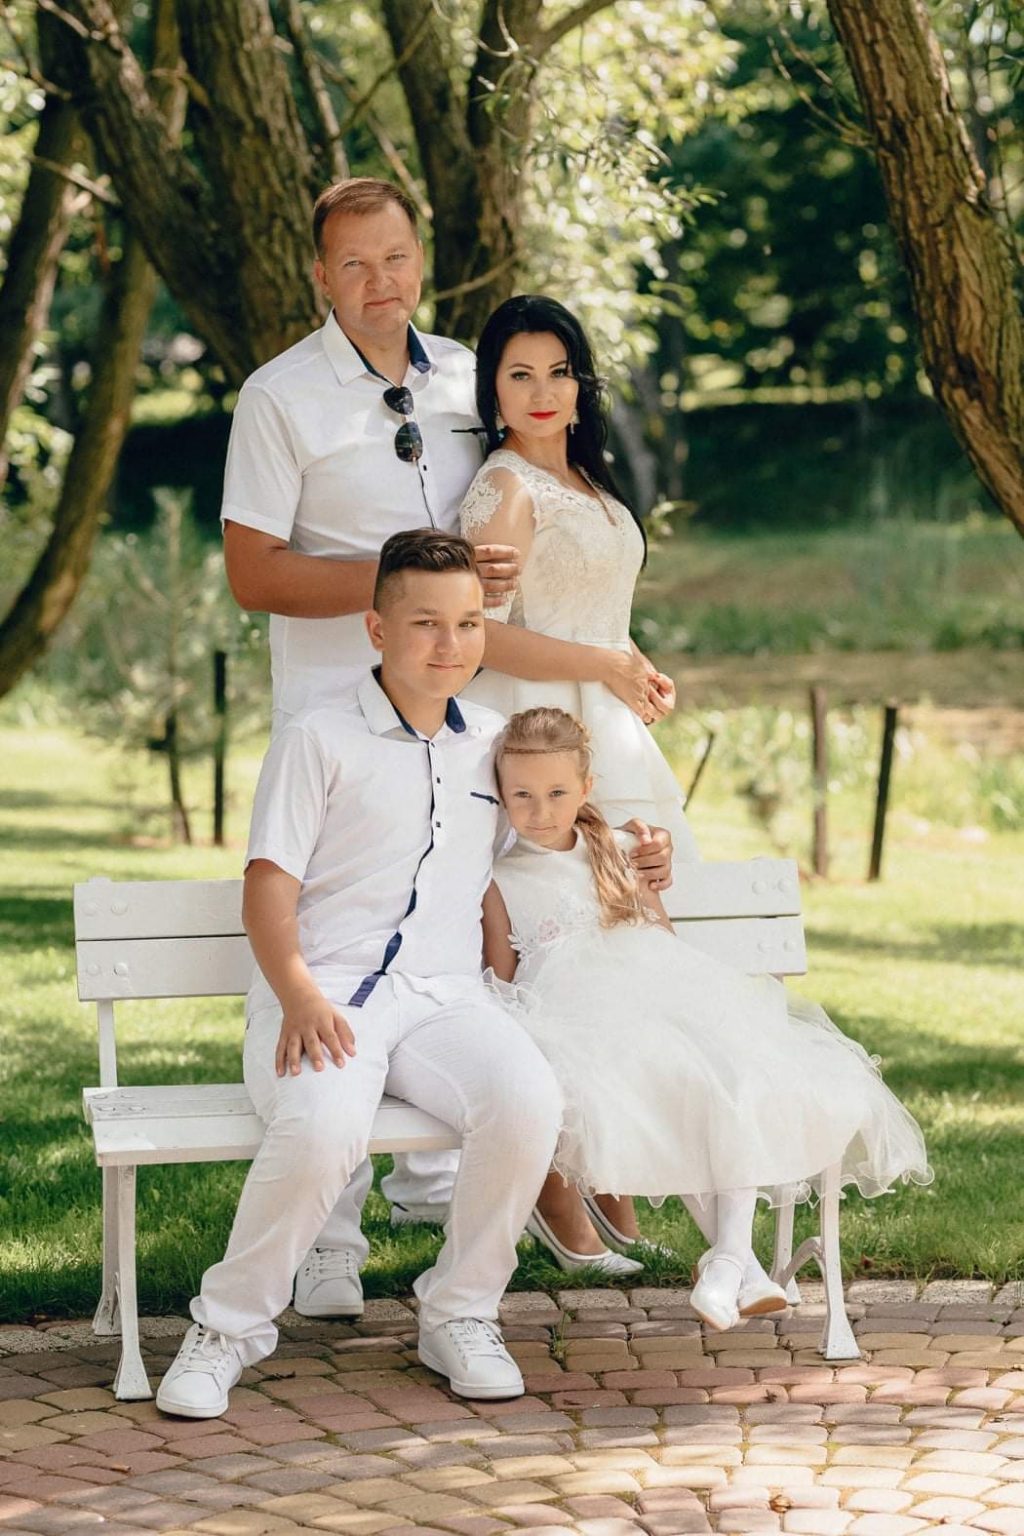 Latakų šeima: tėvai Kęstutis ir Ieva su vaikais Emilijumi ir Estera. Asmeninio archyvo nuotr.